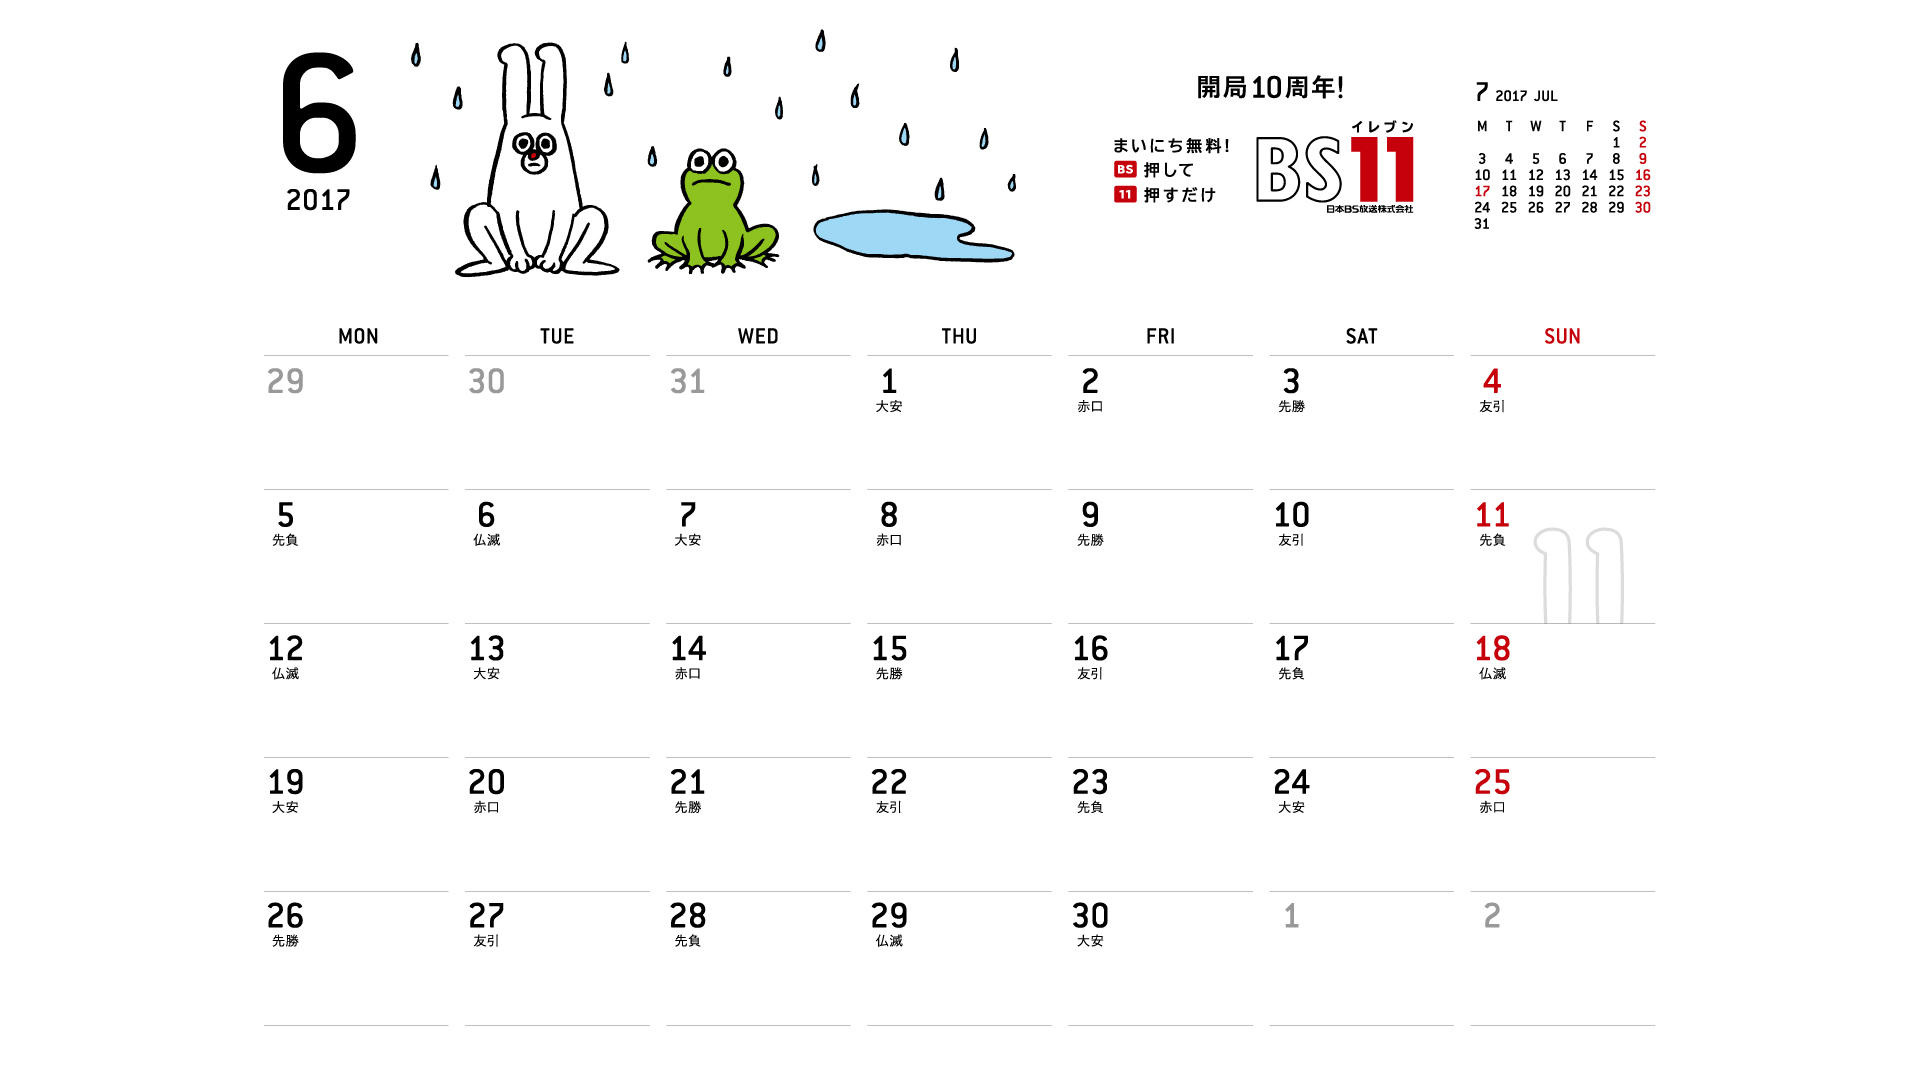 じゅういっちゃんのデジタルカレンダー17年06月 Bs11 イレブン いつでも無料放送